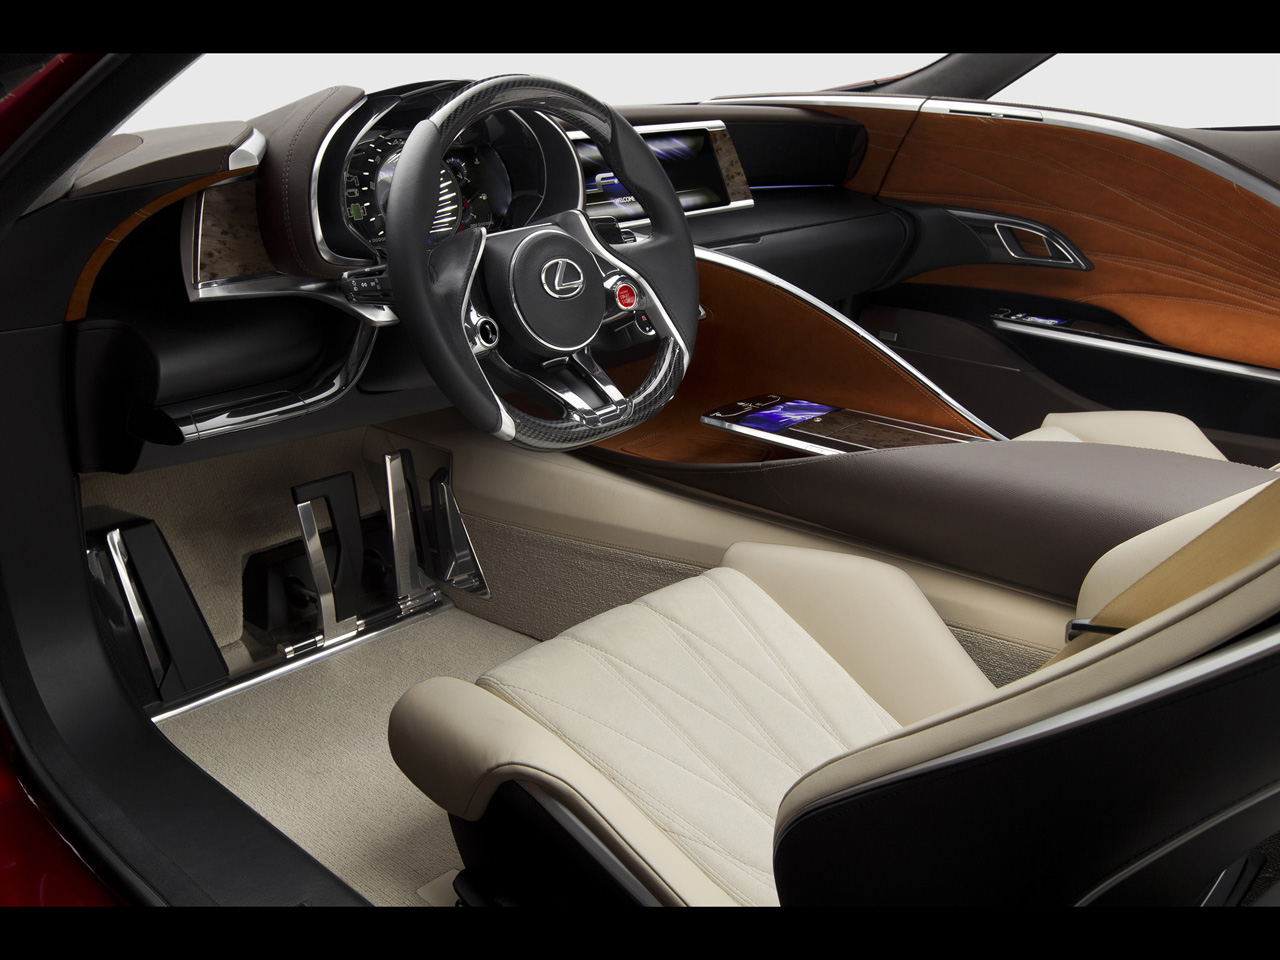 2012 Lexus LF-LC Hybrid Sport Coupe Concept